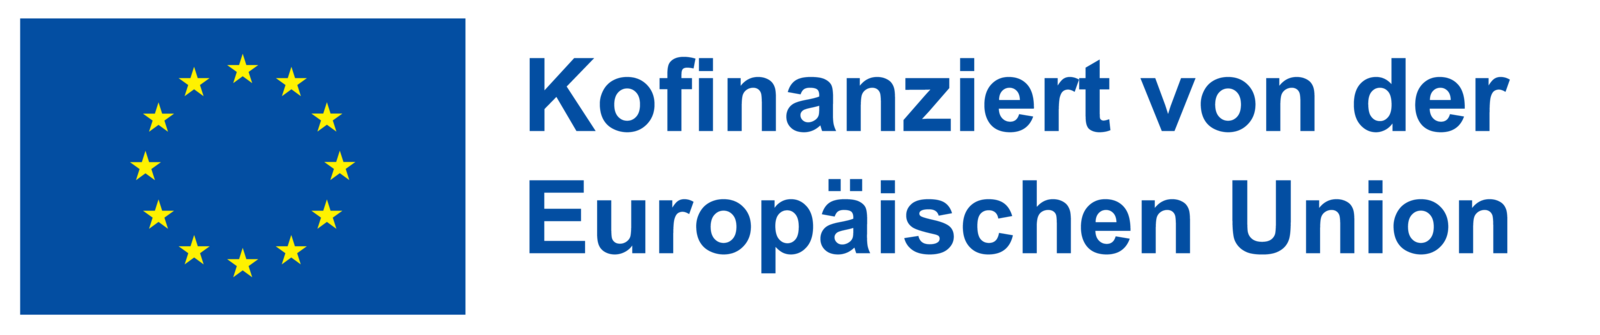 EU-Fahne mit Schriftzug "Kofinanziert von der Europäischen Union"